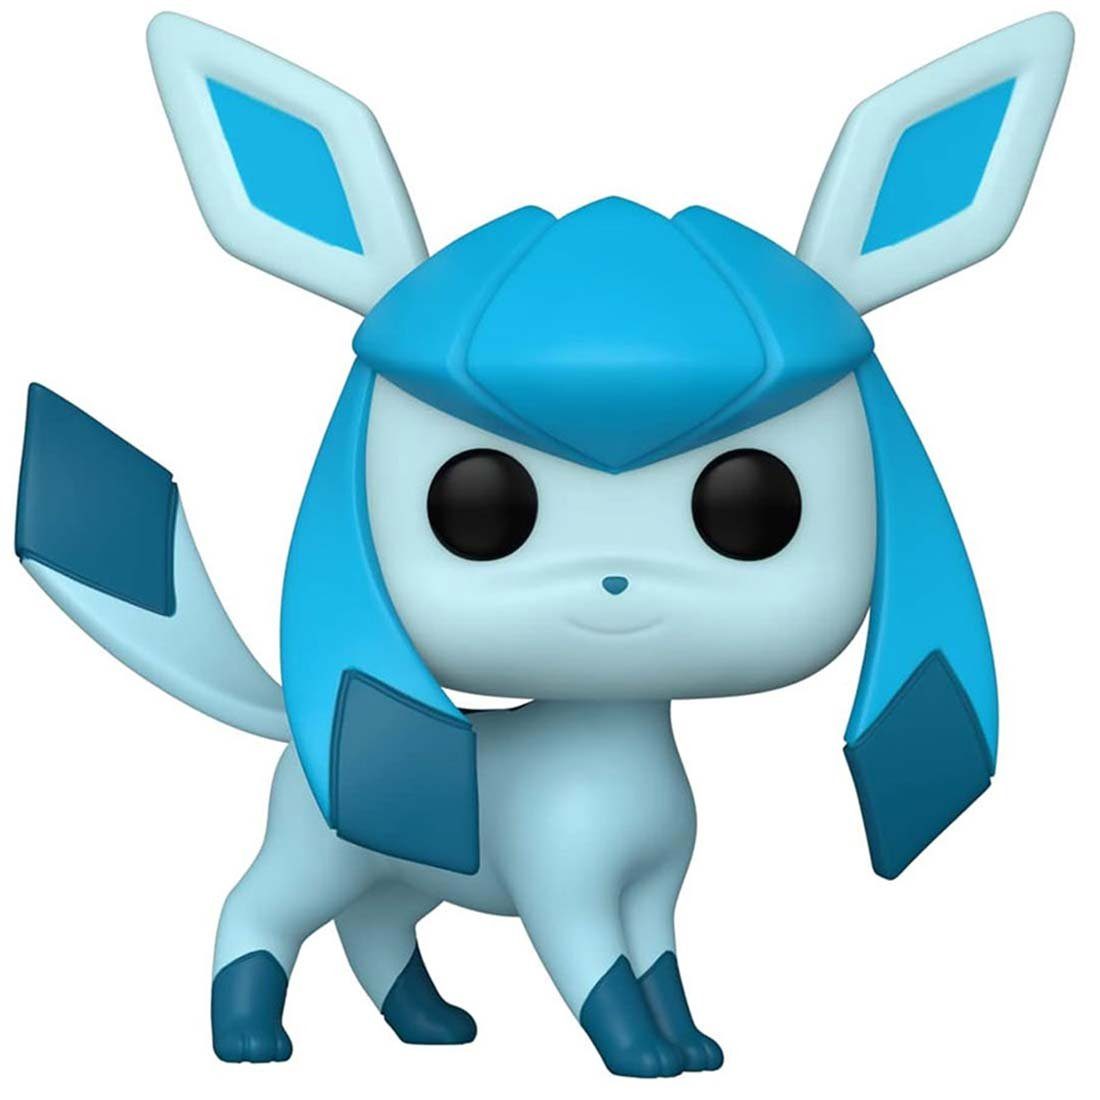 Merchandise-Figur Pokémon von Funko Glaceon, von 69080, Funko Glaziola, Pokémon Glaziola Eis, POP Funko Figur aus POP! Figur Typ (Figur),